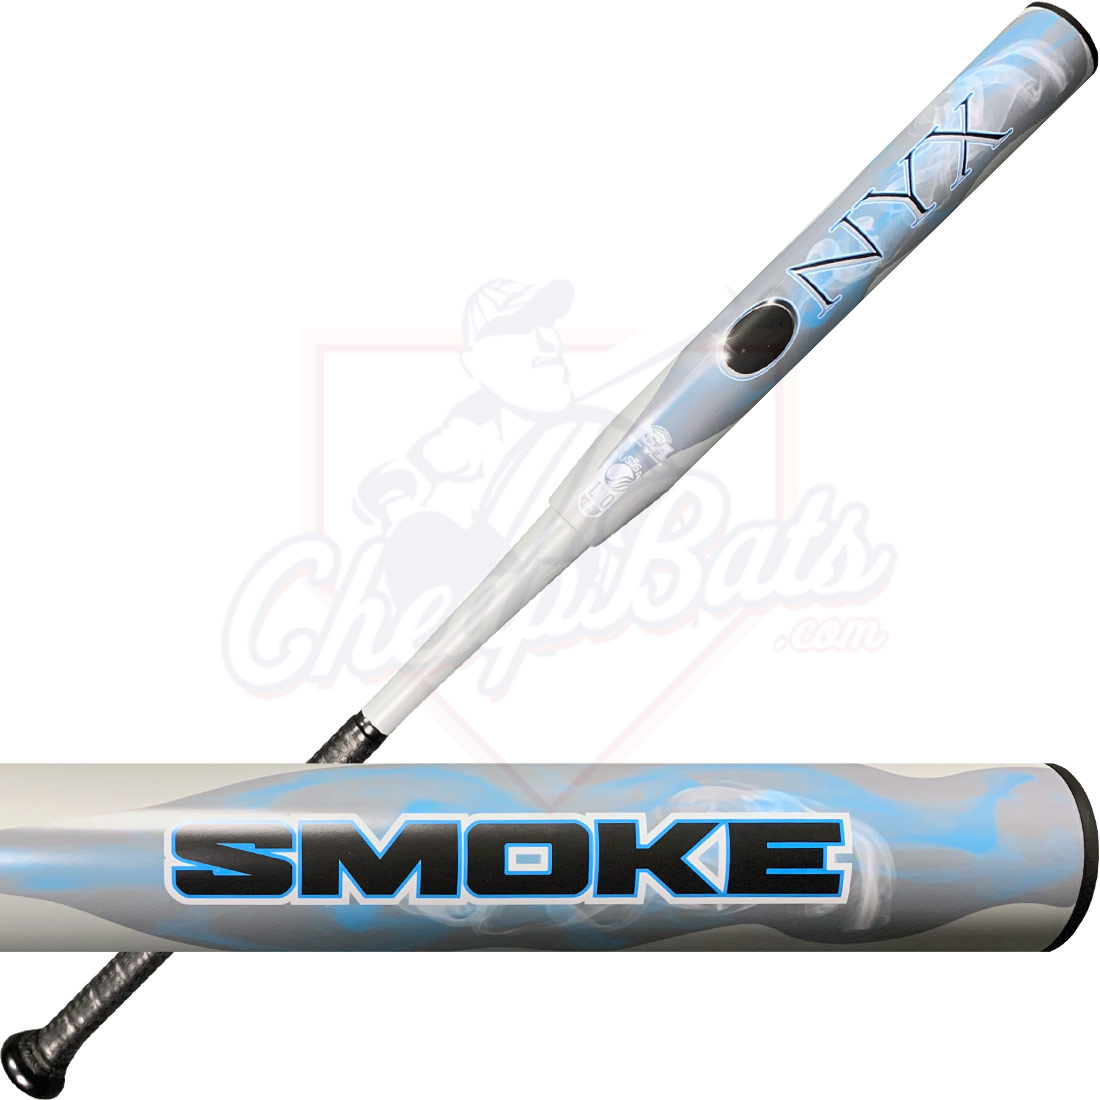 2020 Onyx Smoke Slowpitch Softball Bat Balanced USSSA